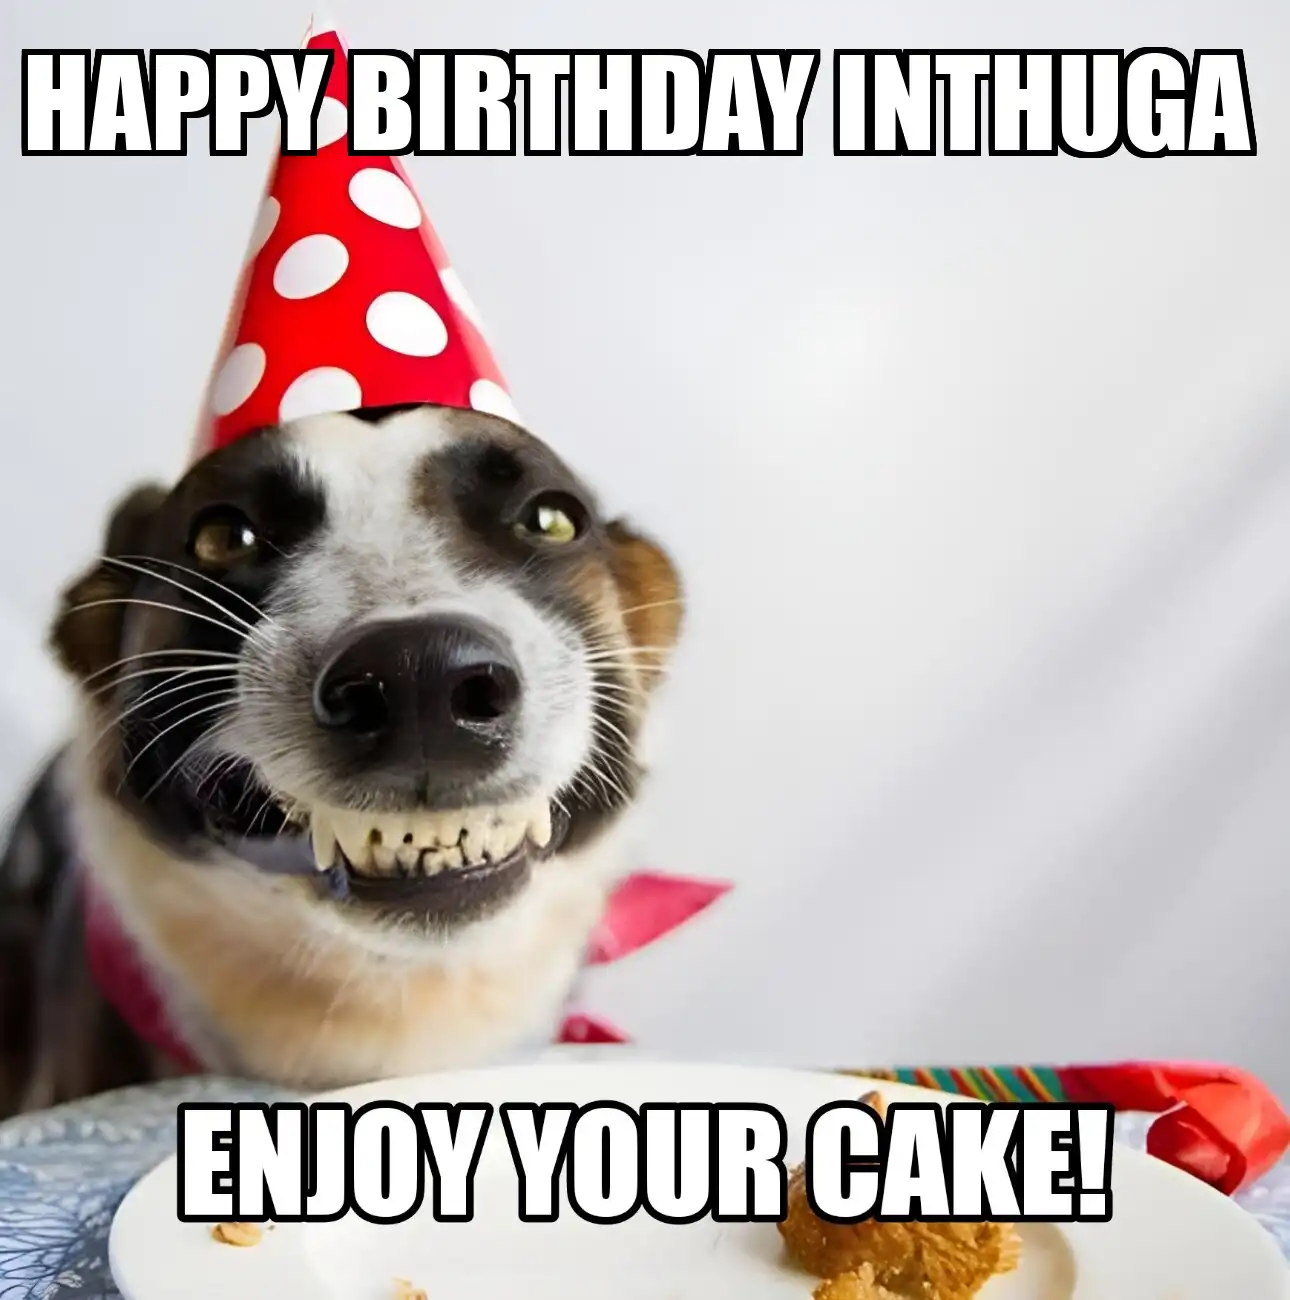 Happy Birthday Inthuga Enjoy Your Cake Dog Meme